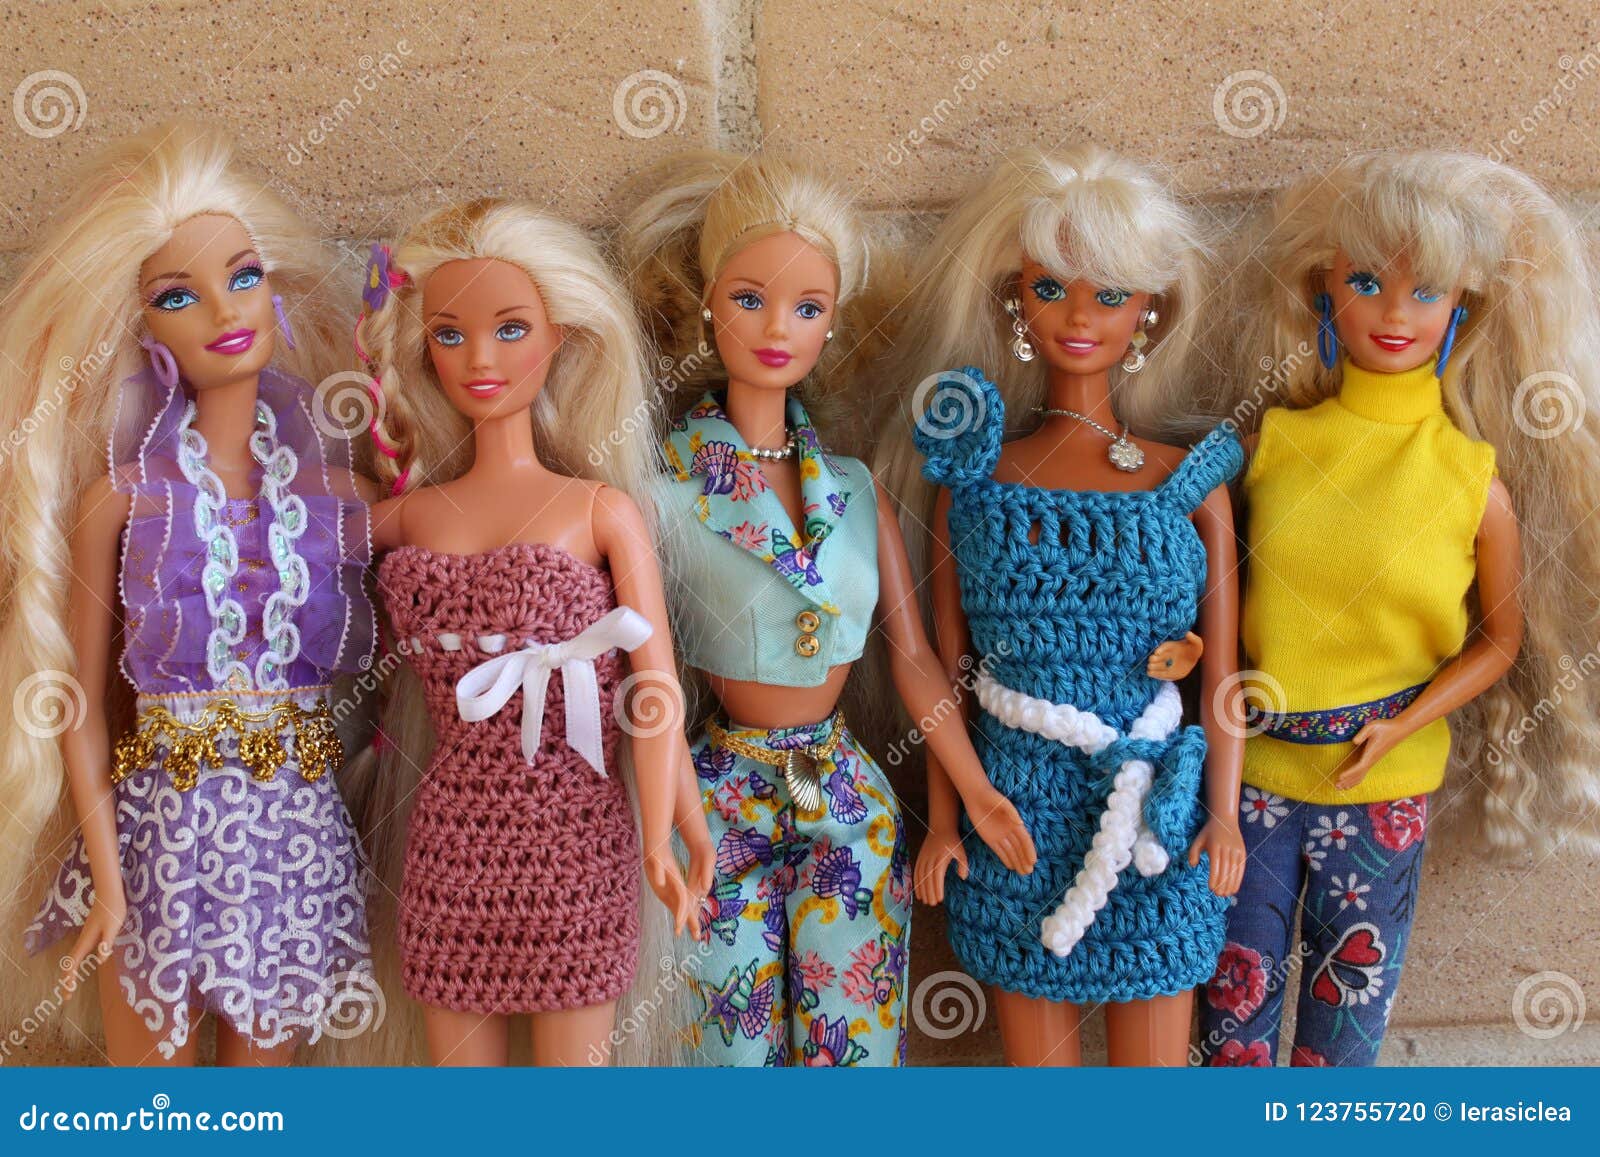 old barbie dolls for sale